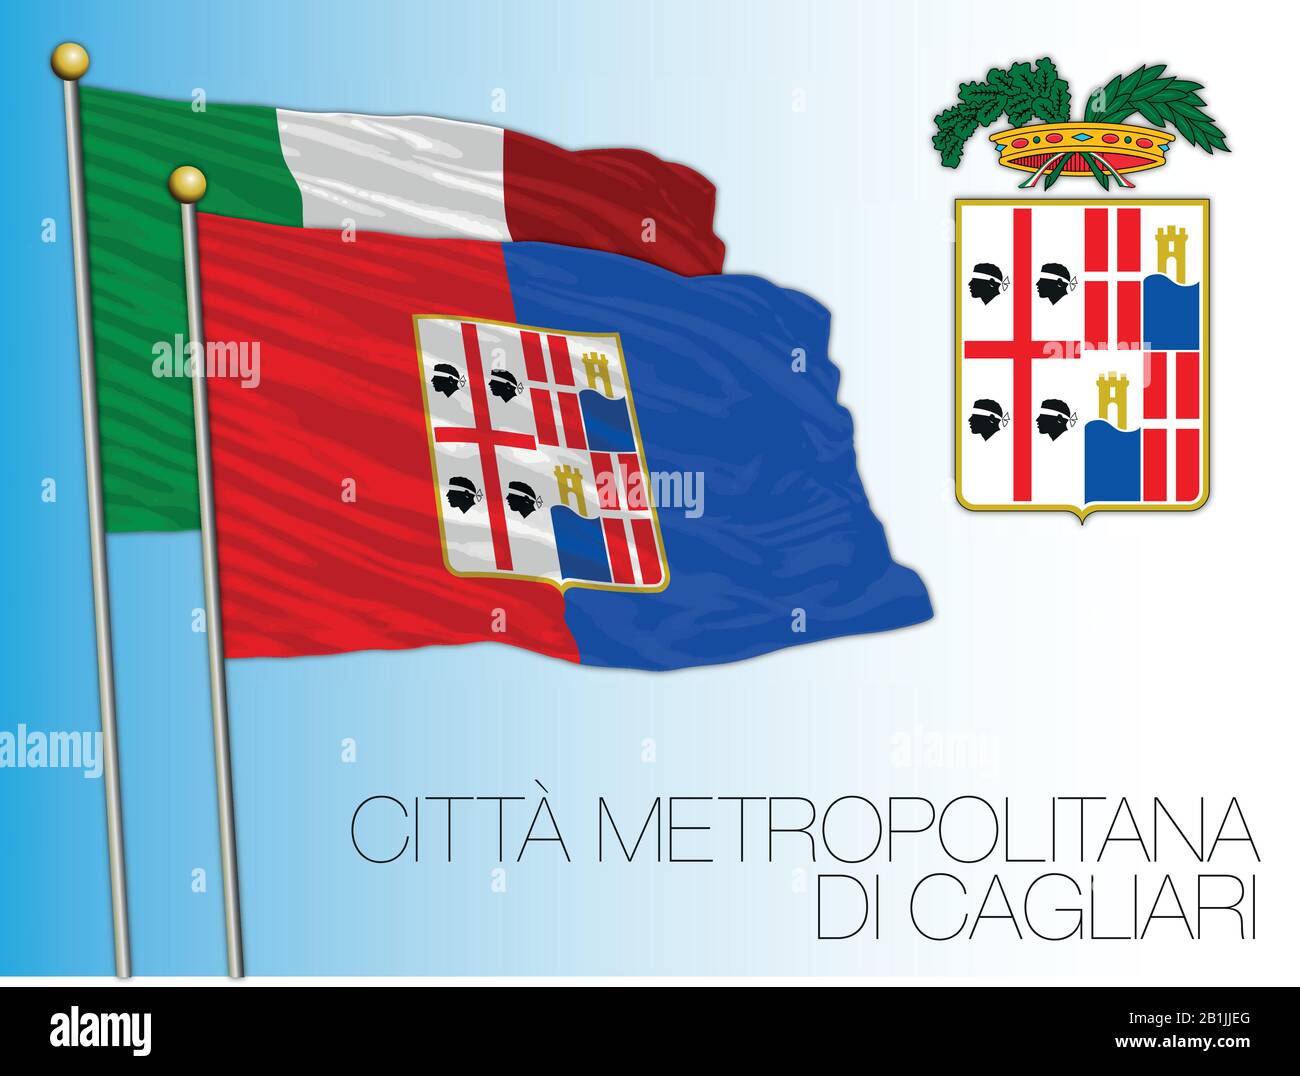 Citta Metropolitana di Cagliari, Metropolitanstadt Cagliari, Sardinien, Flagge und Wappen, Italien, Vektorillustration Stock Vektor